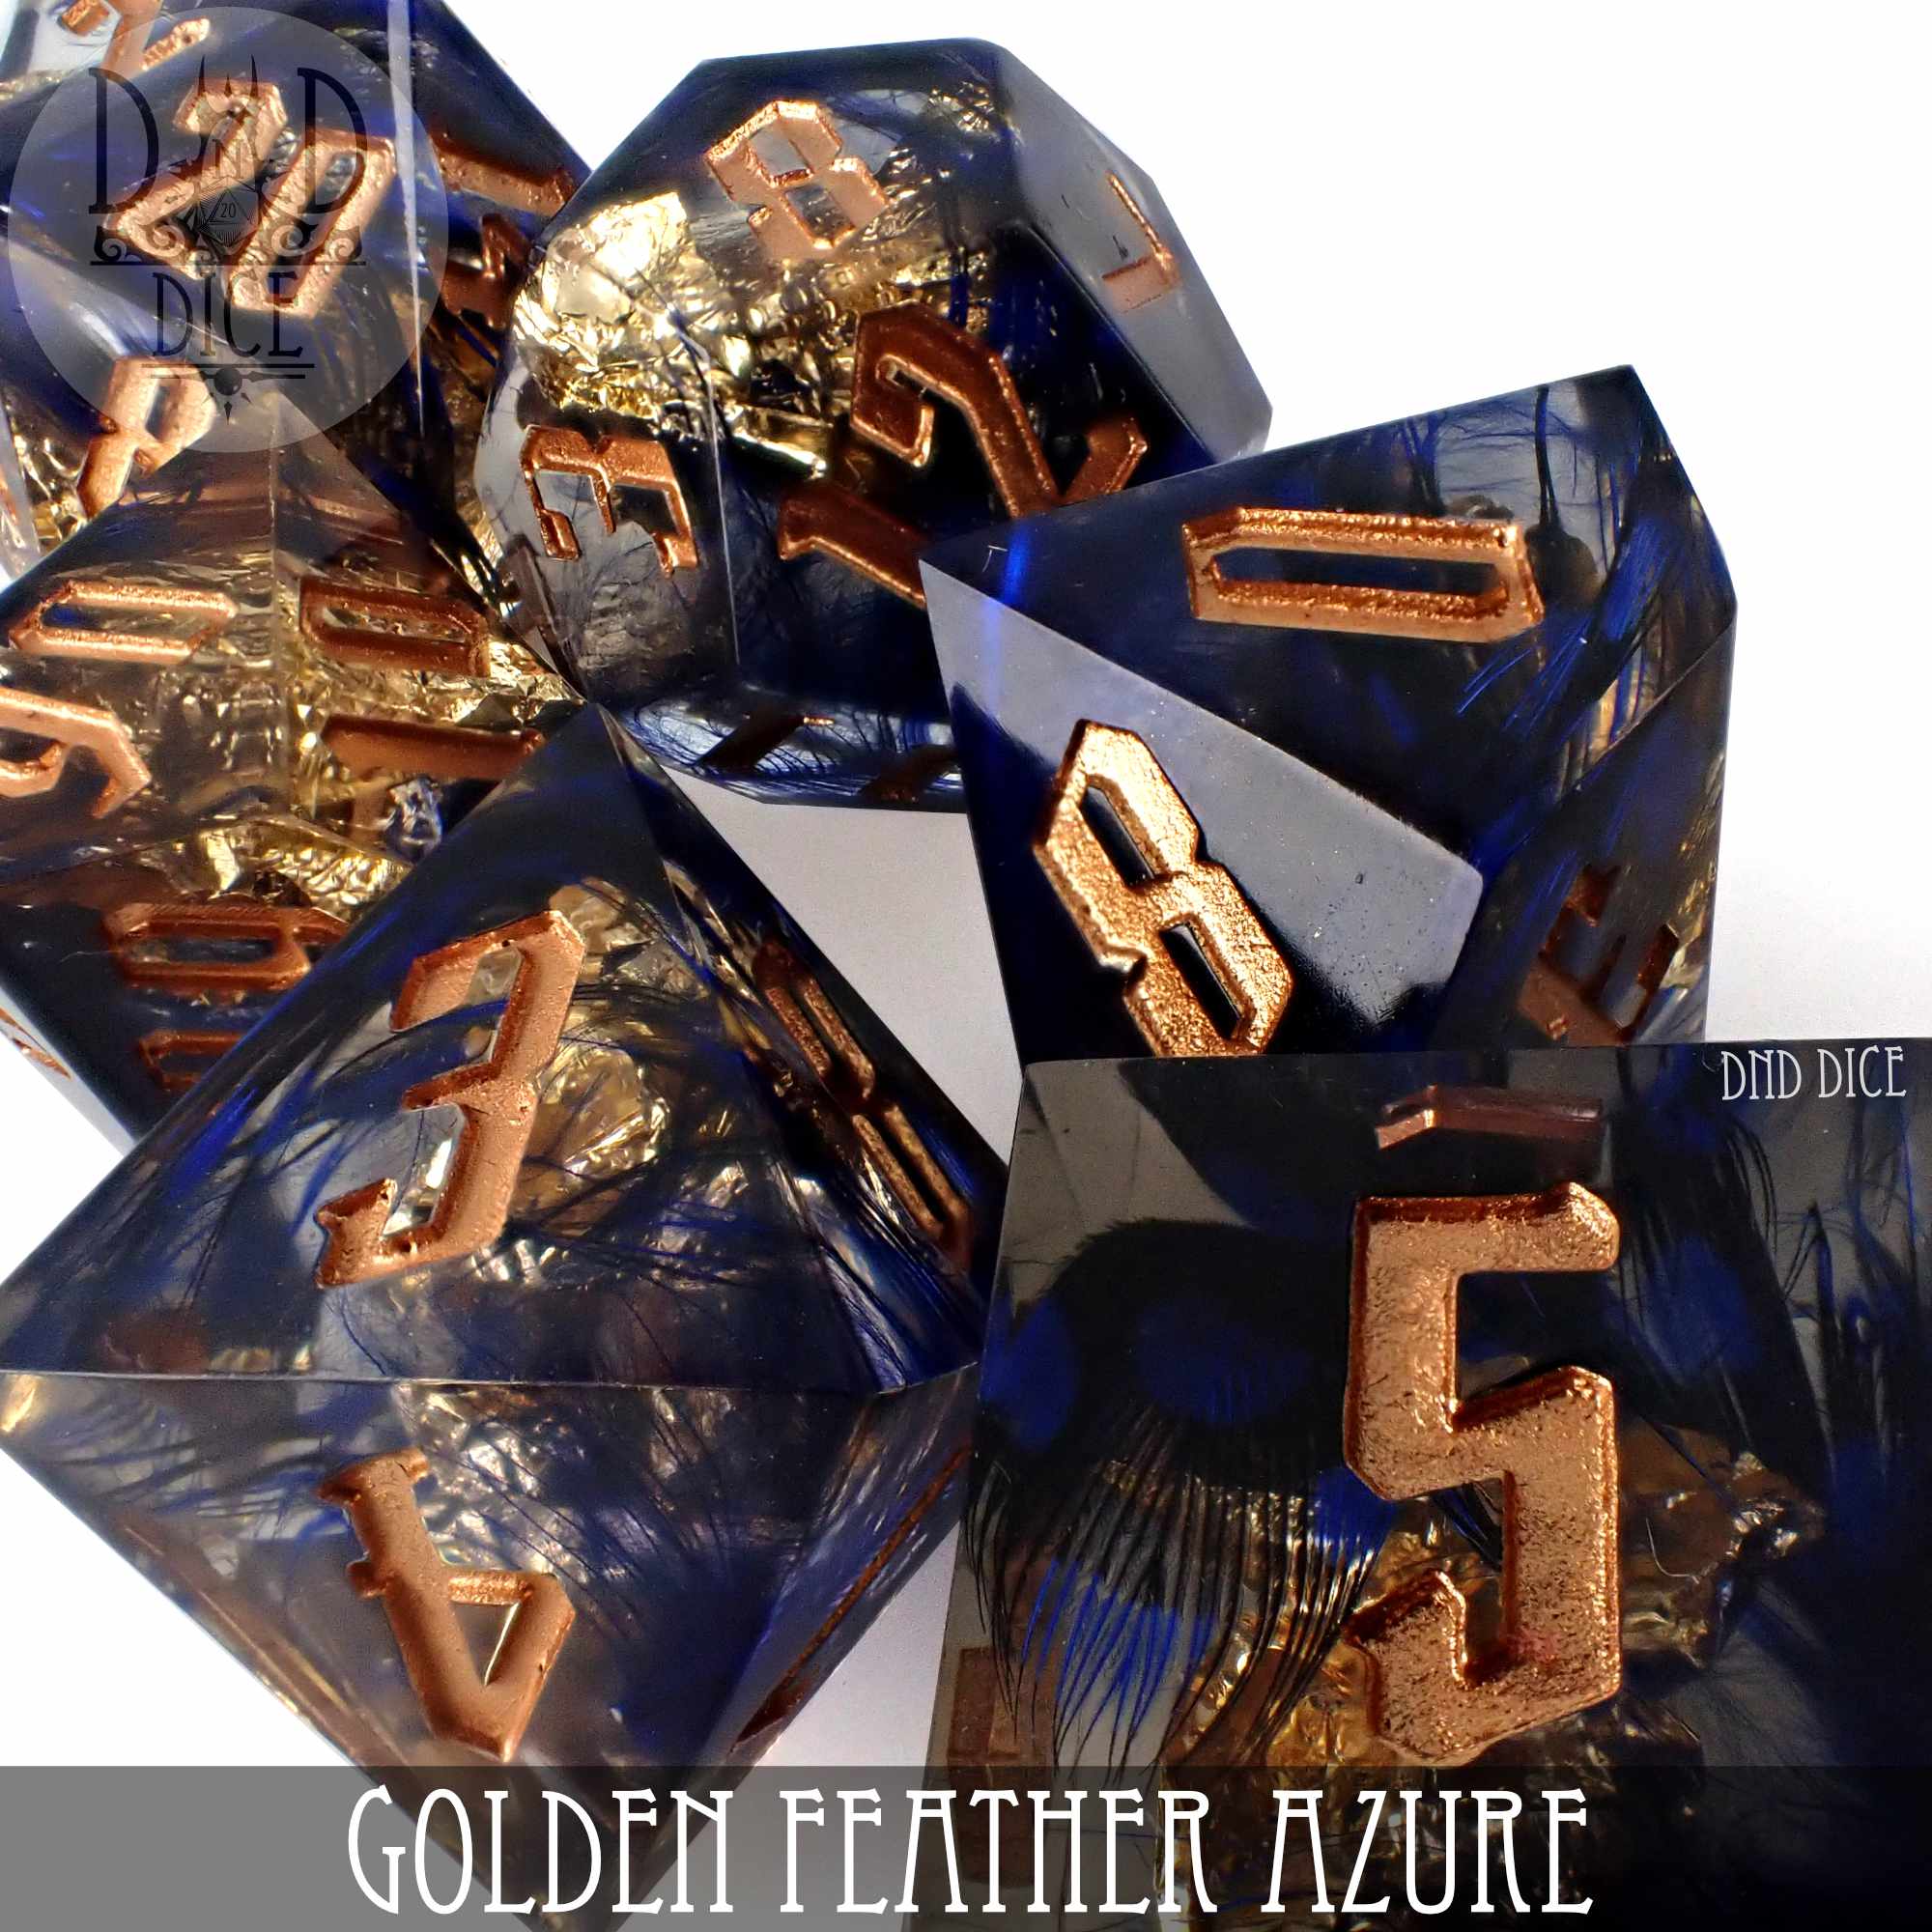 Golden Feather Azure Handmade Dice Set